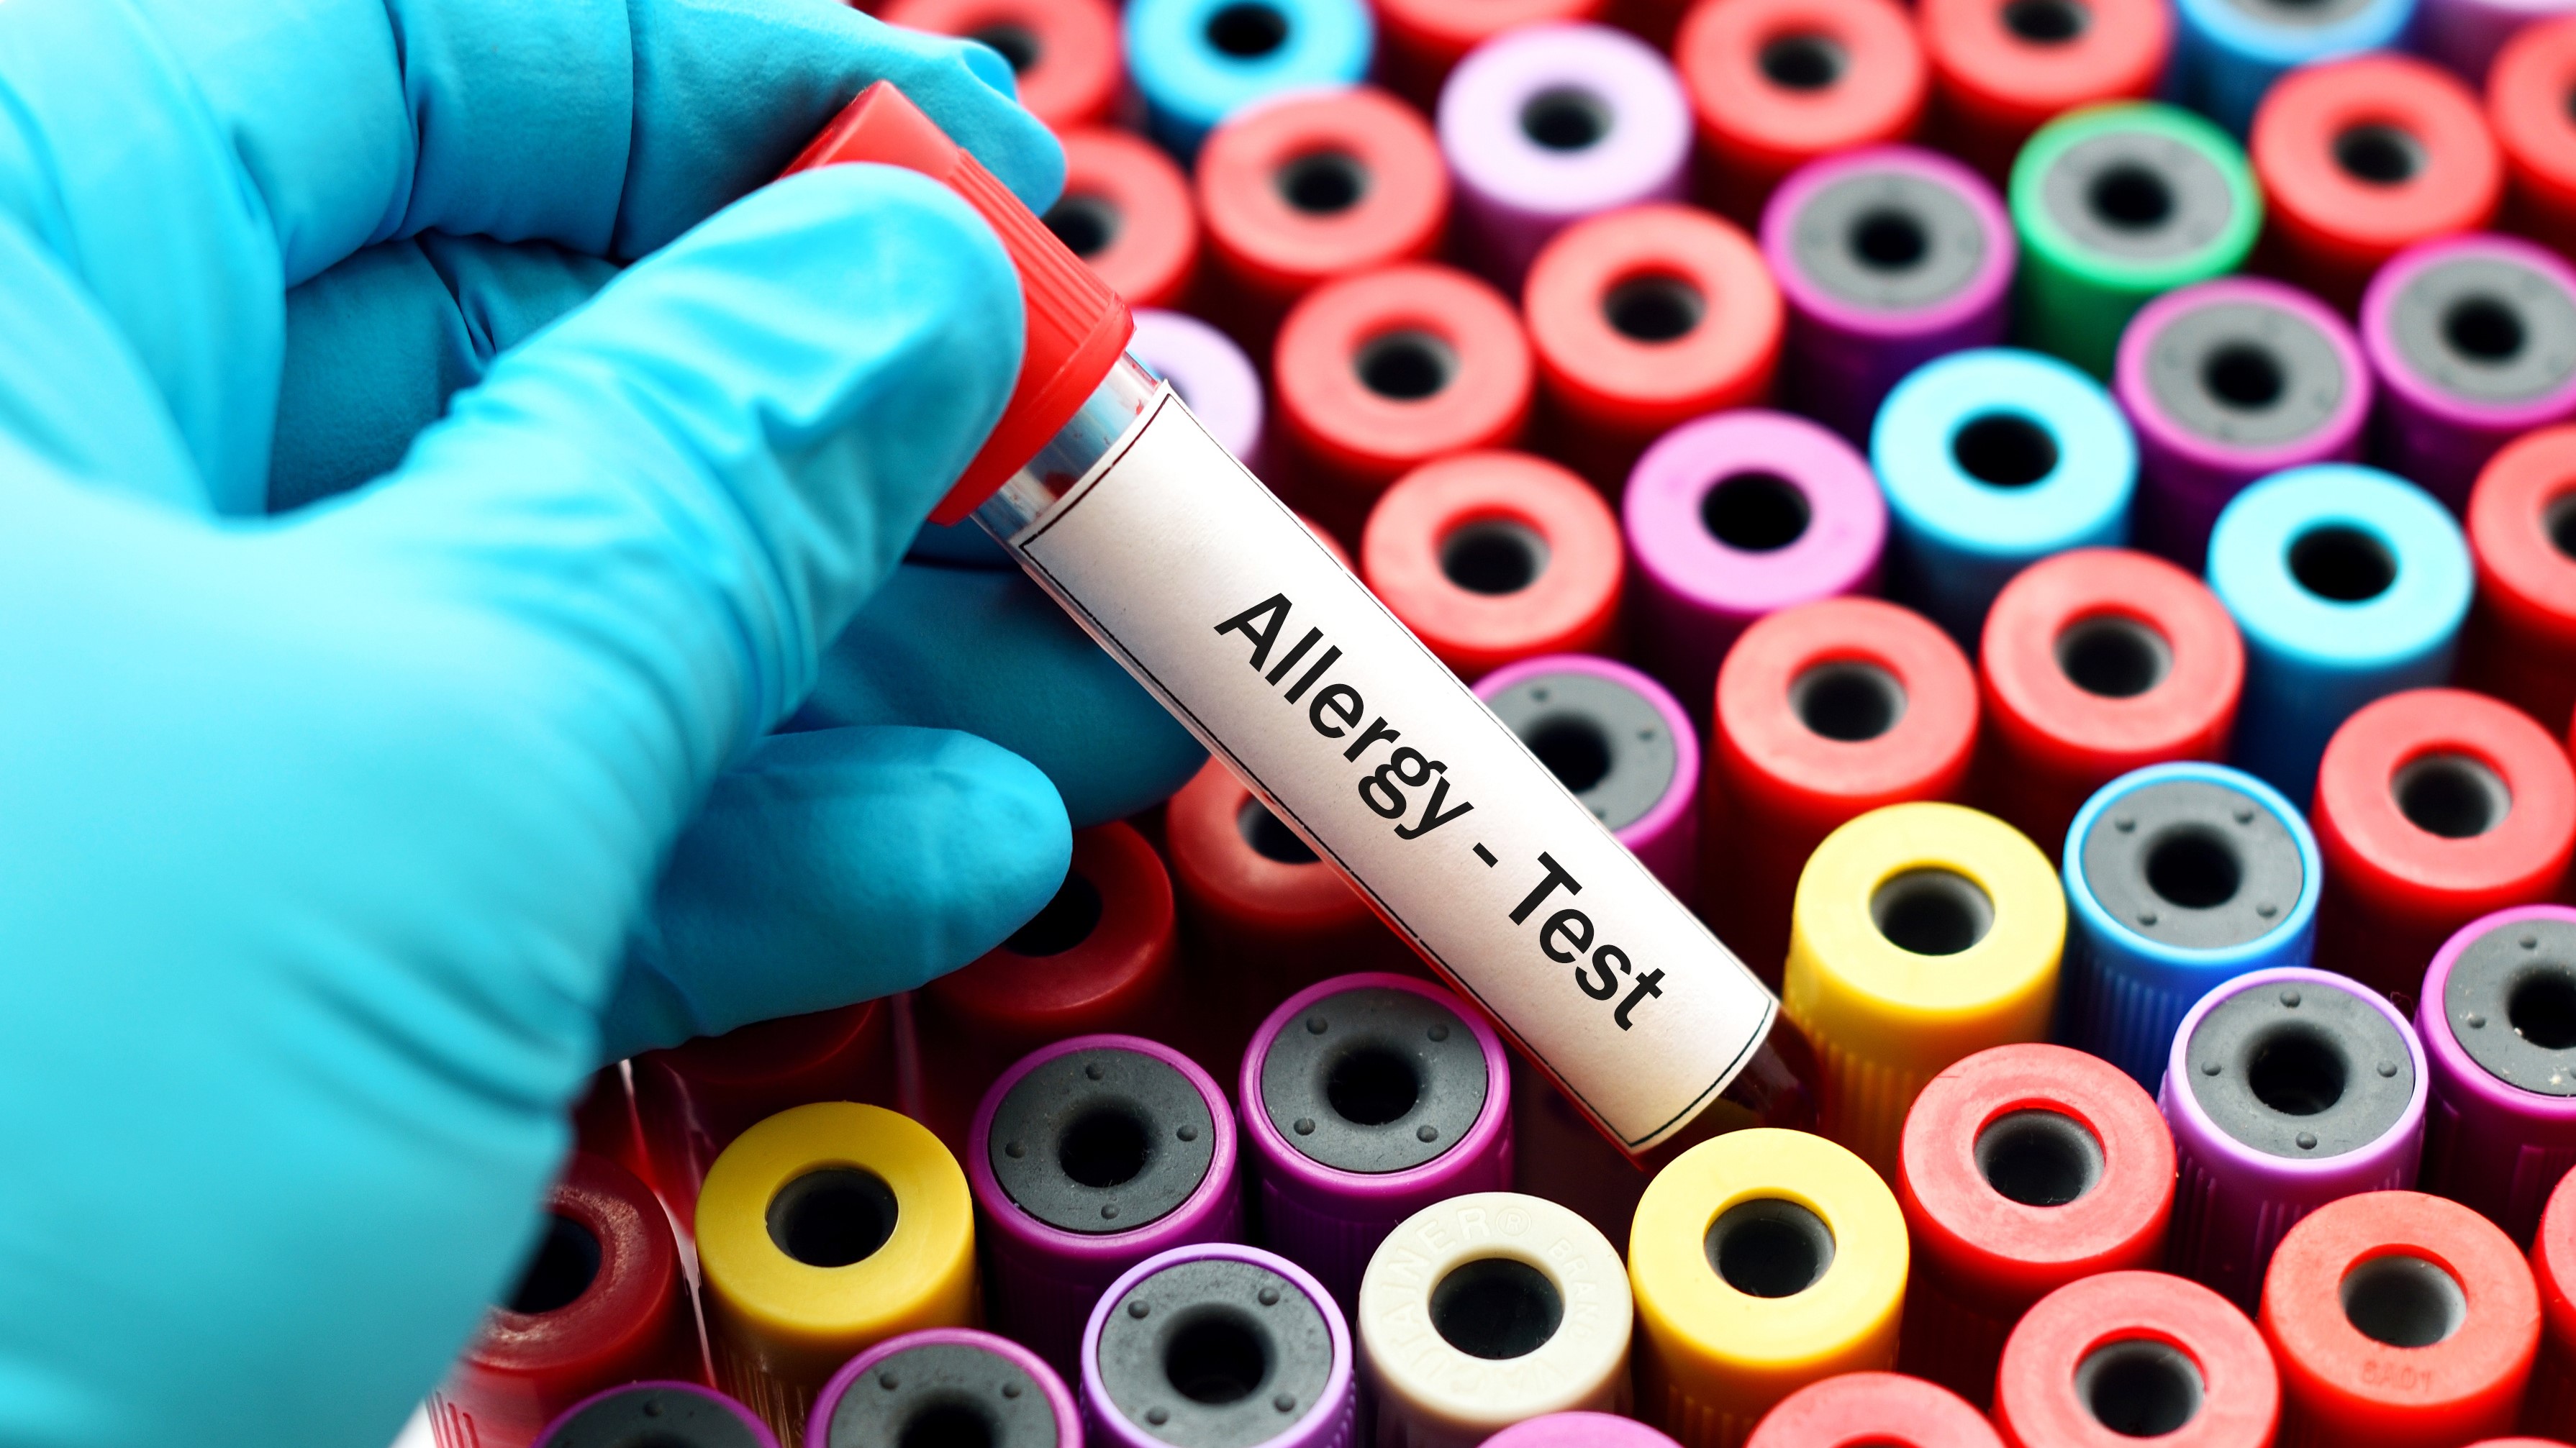 Teströhrchen für Allergietests